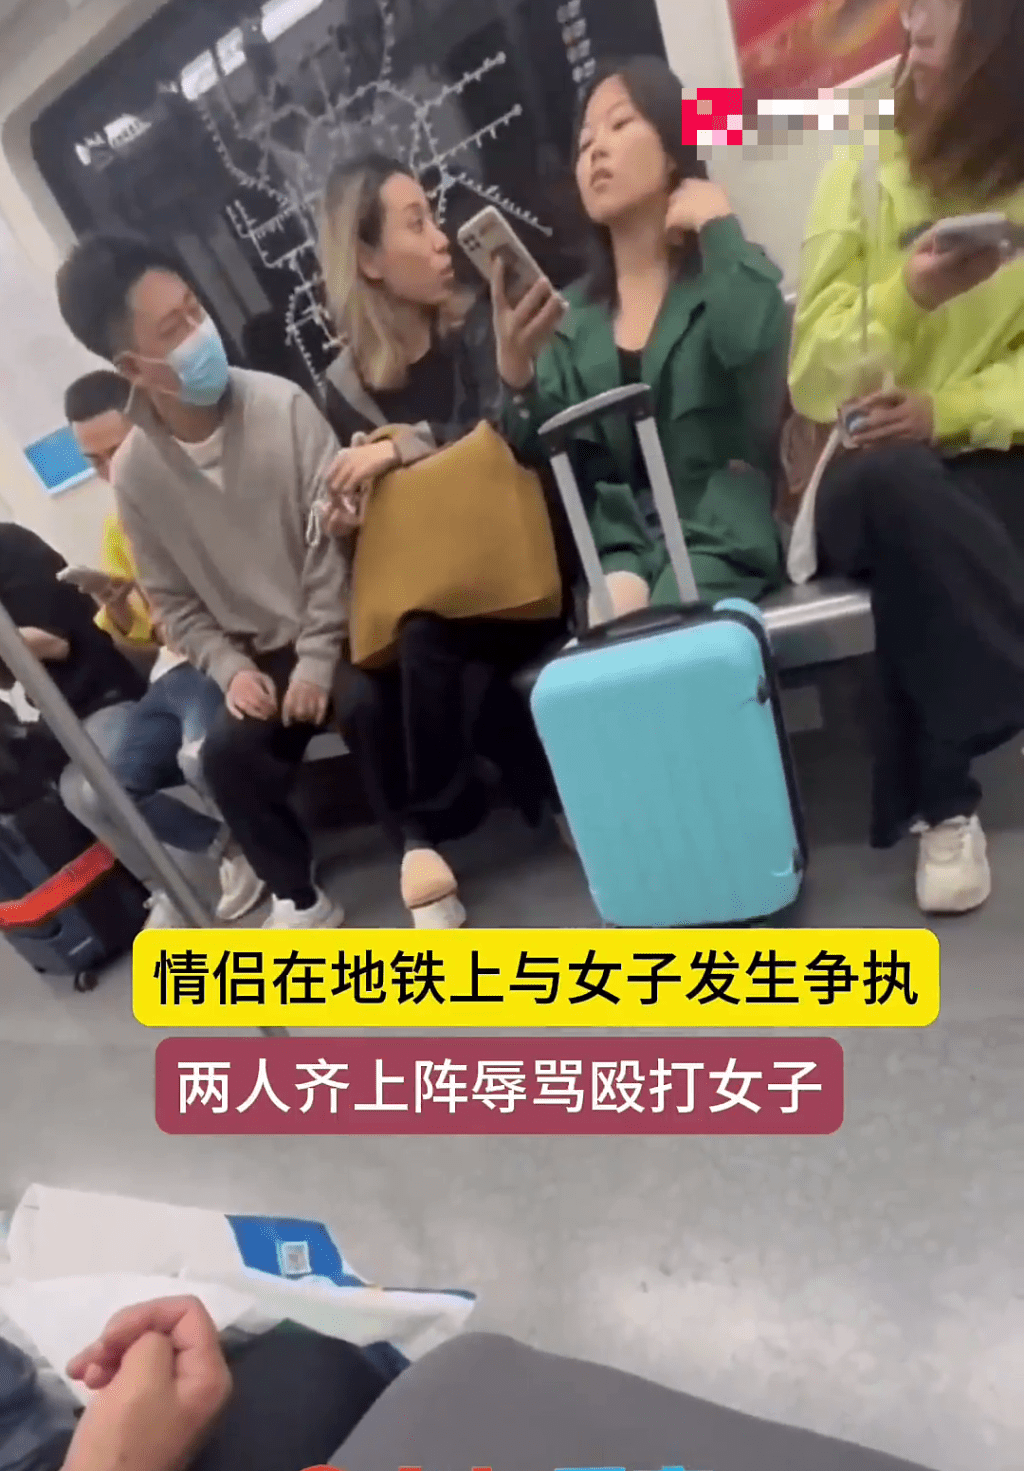 黑衫女不停骂旁边绿衫的女乘客，绿衫边看手机边回话。